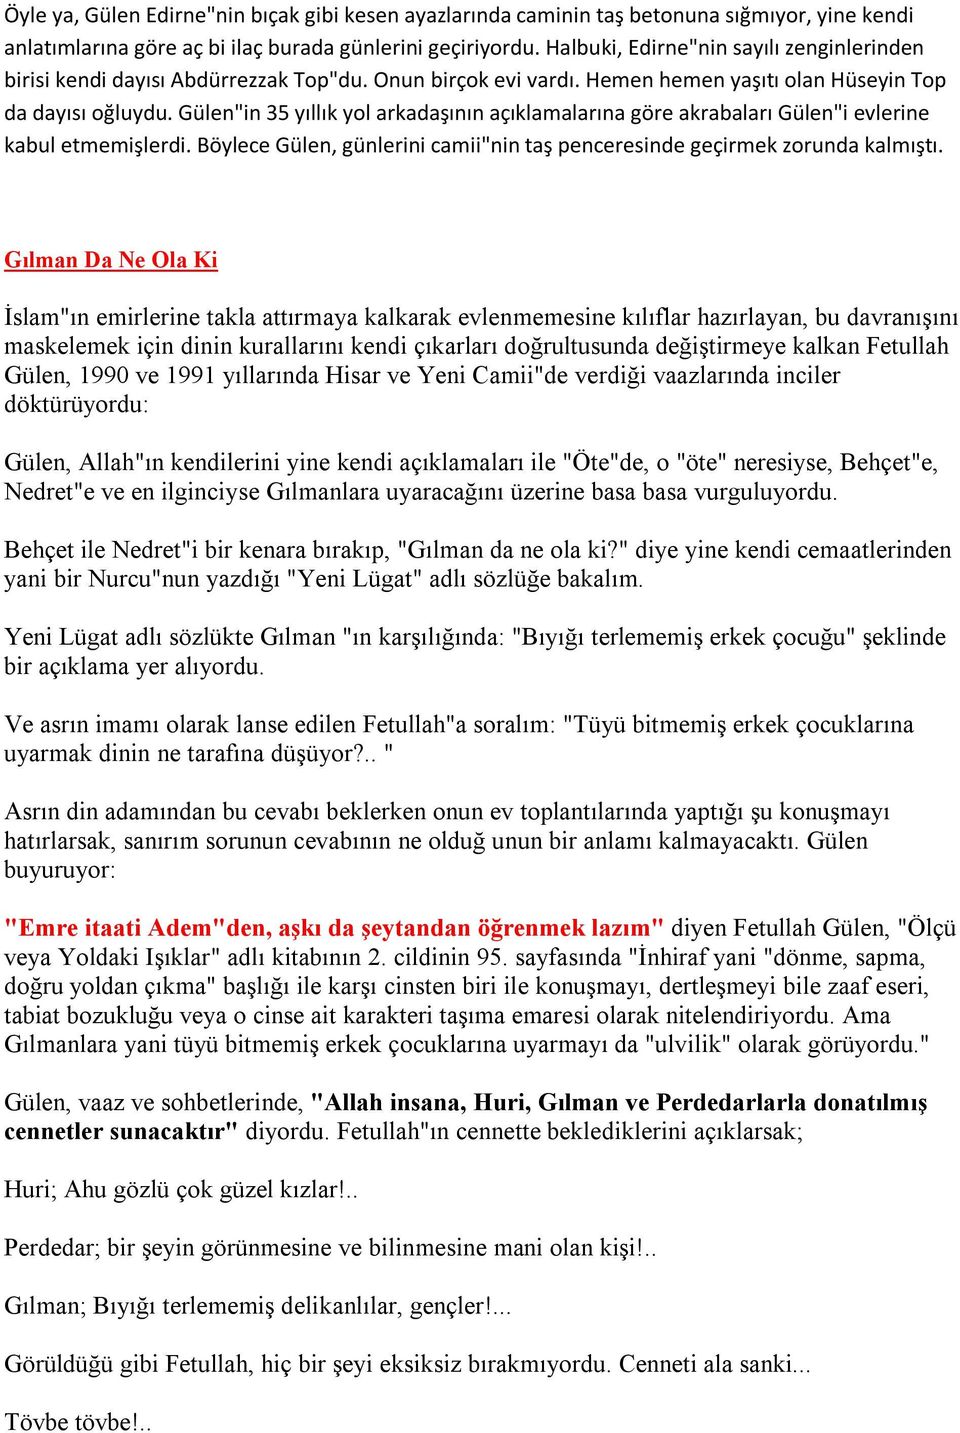 Gülen"in 35 yıllık yol arkadaşının açıklamalarına göre akrabaları Gülen"i evlerine kabul etmemişlerdi. Böylece Gülen, günlerini camii"nin taş penceresinde geçirmek zorunda kalmıştı.